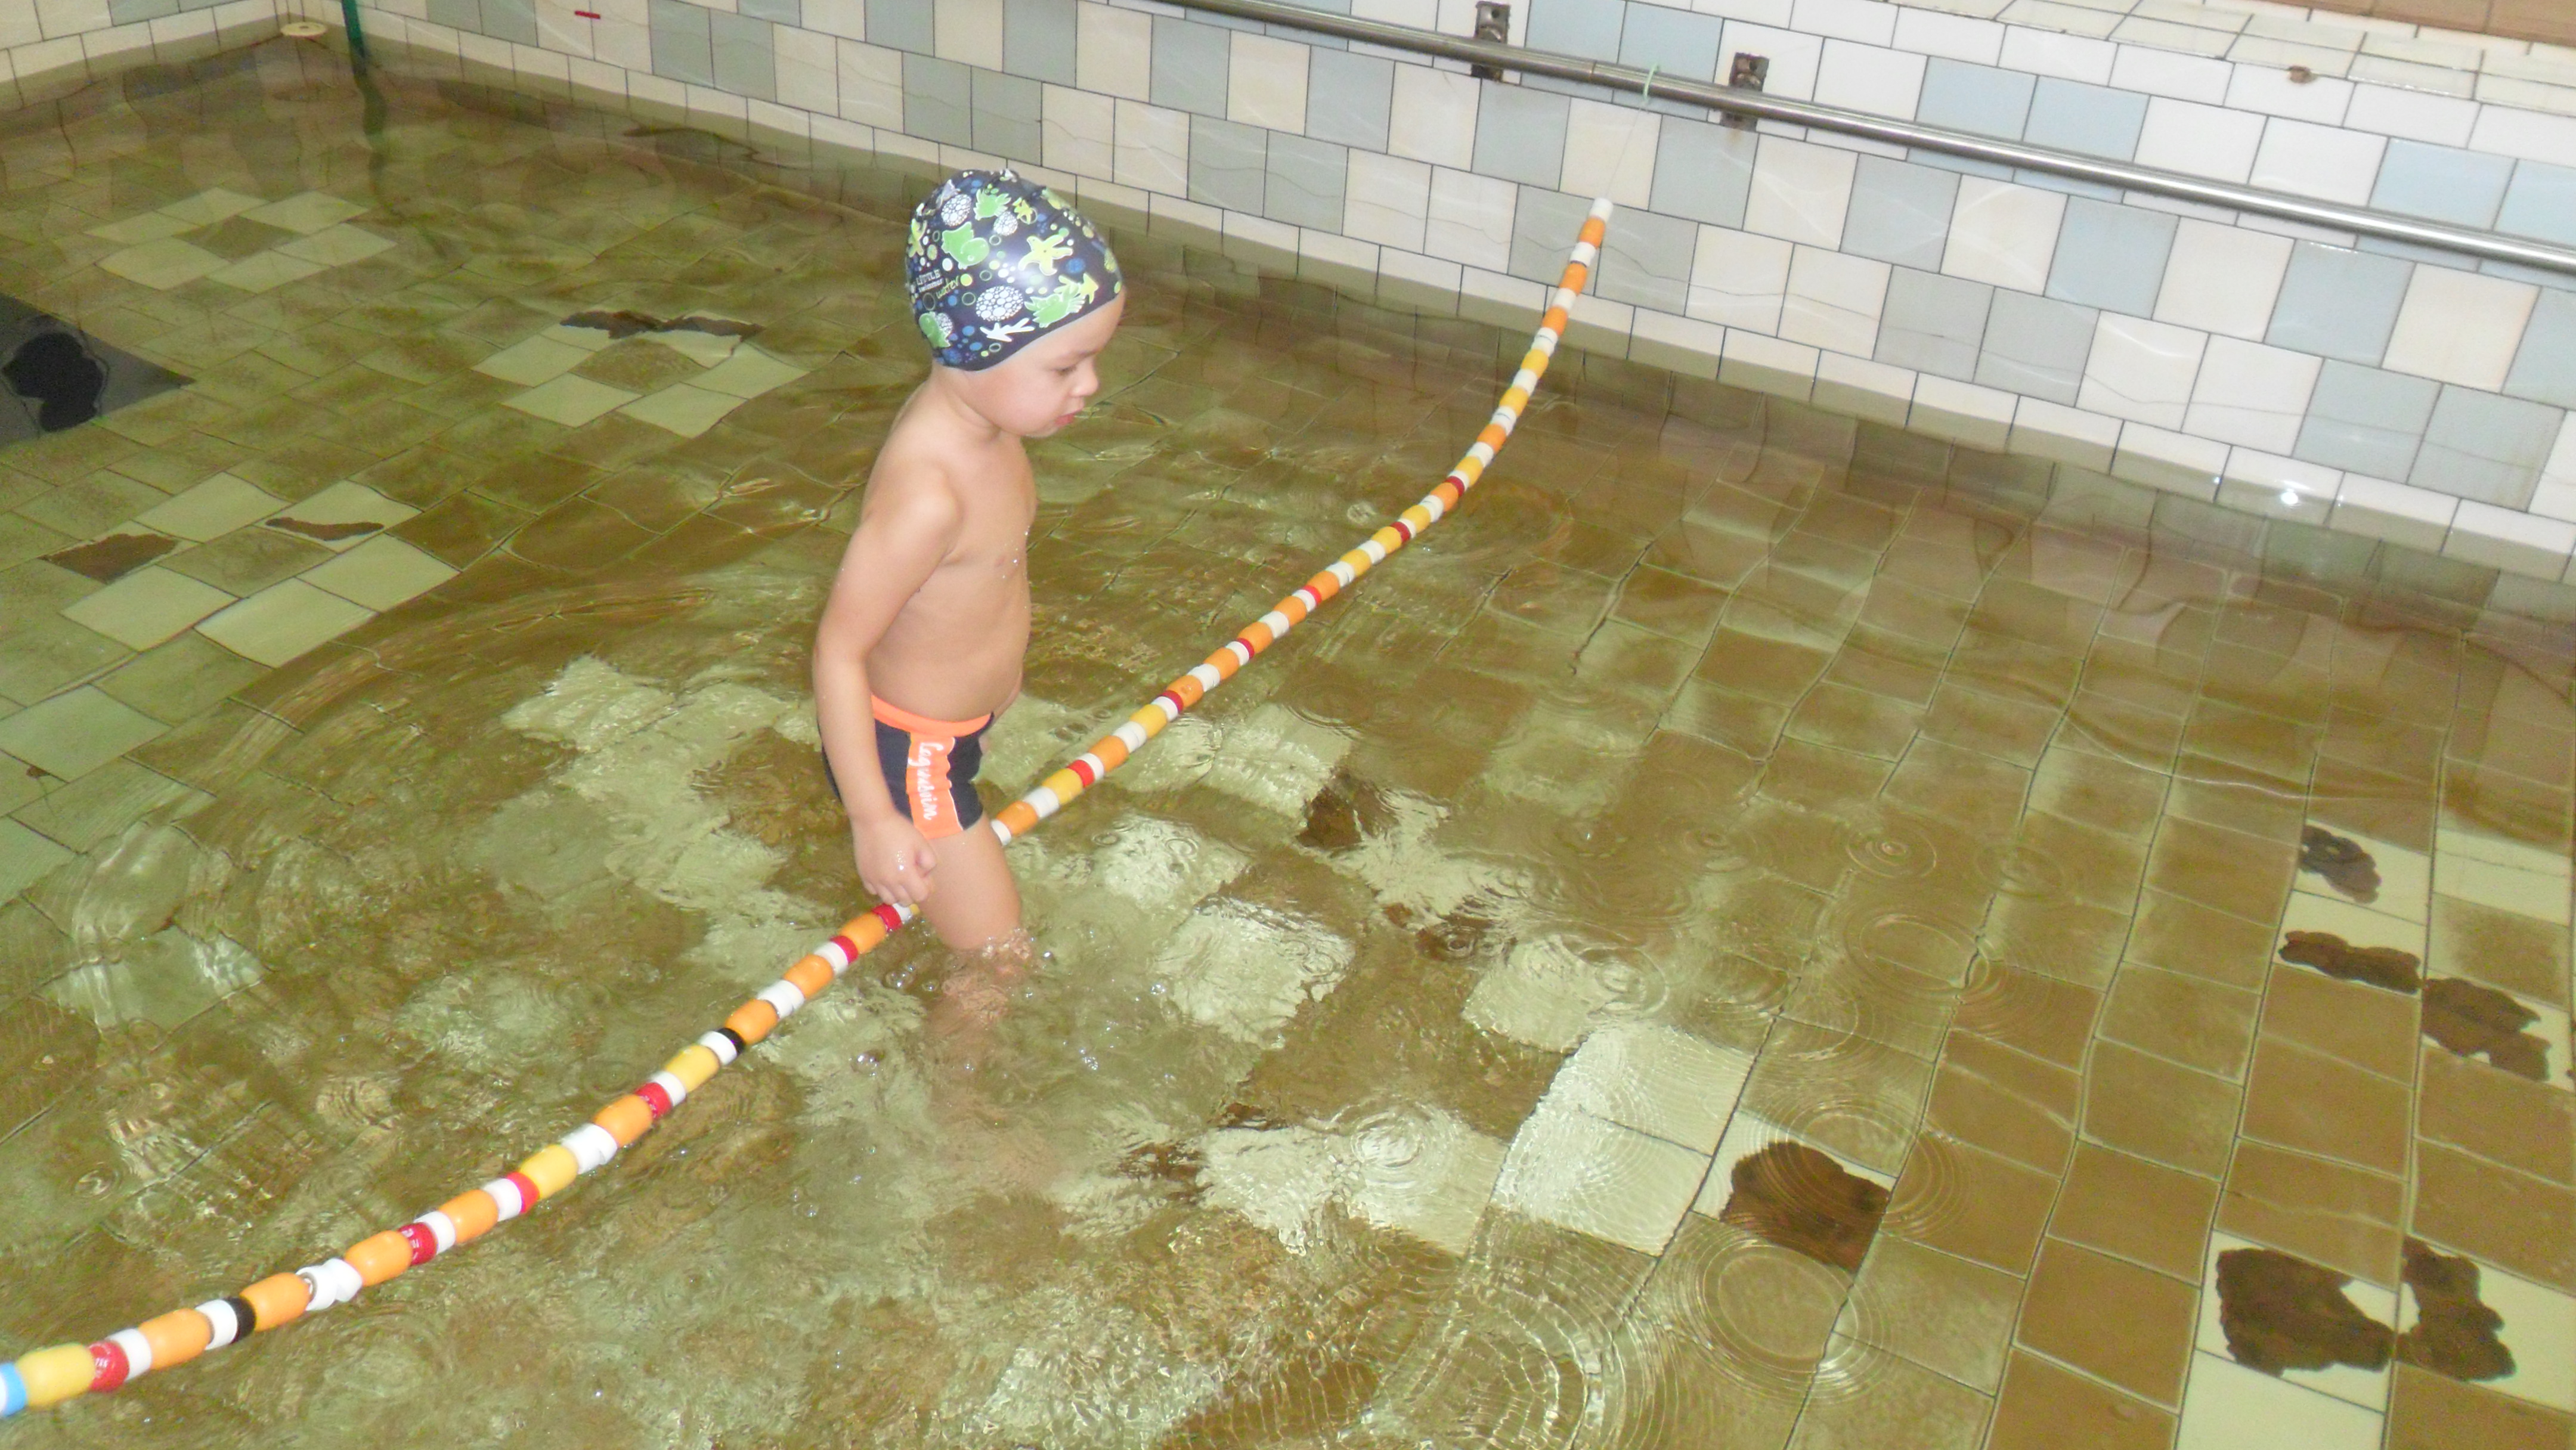 Изготовление и применение нестандартного оборудования на занятиях в бассейне